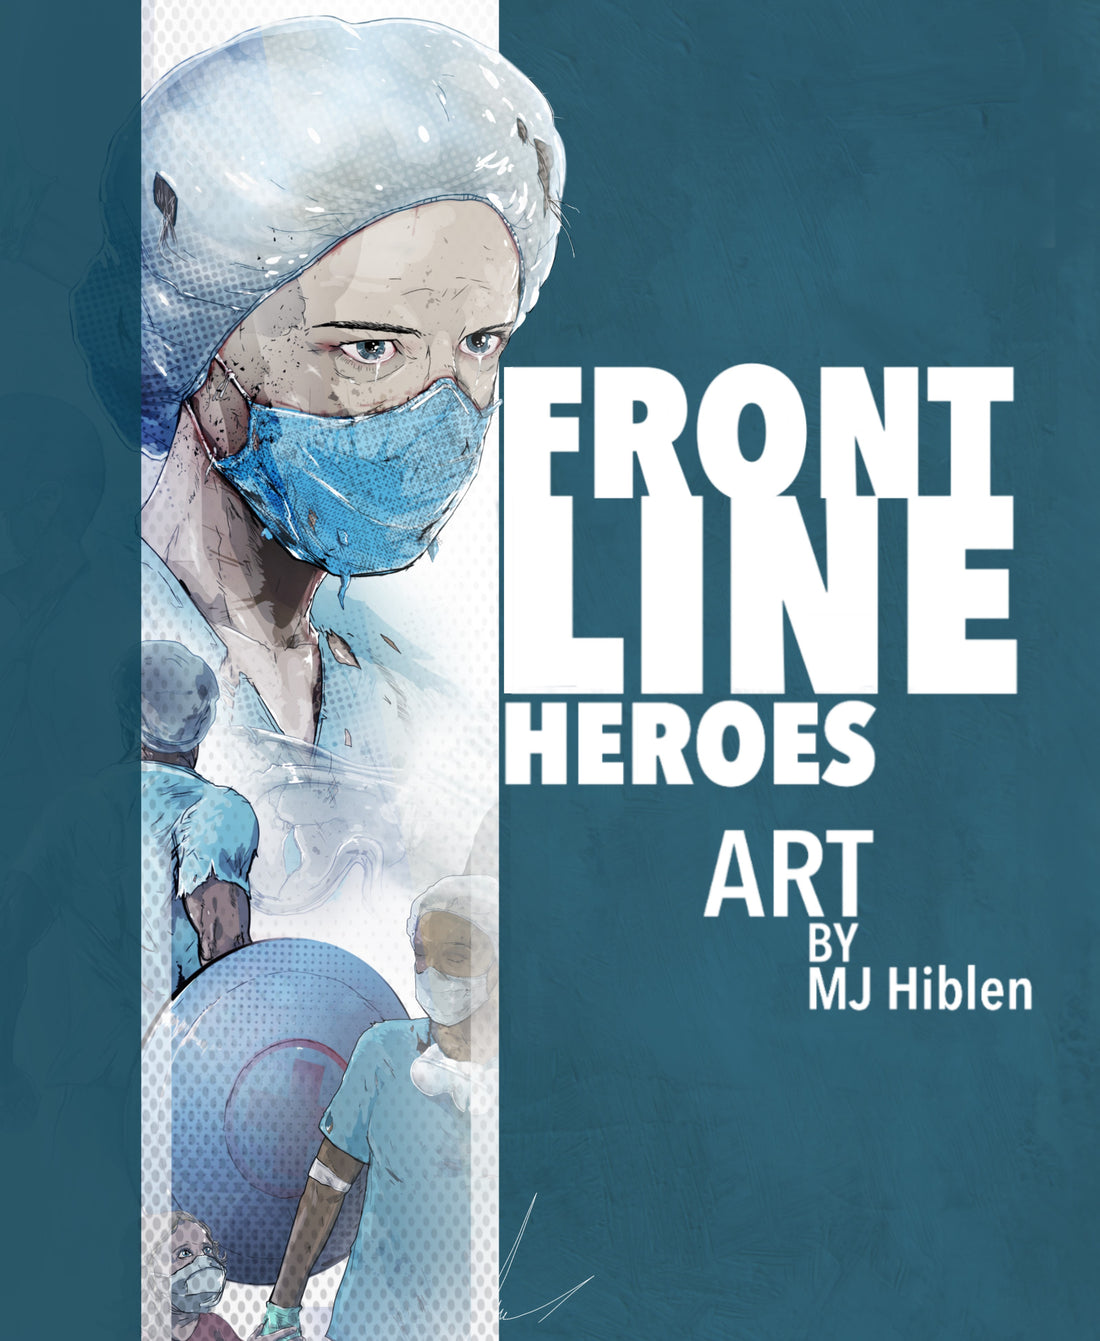 Frontline Heroes - New Book Alert!